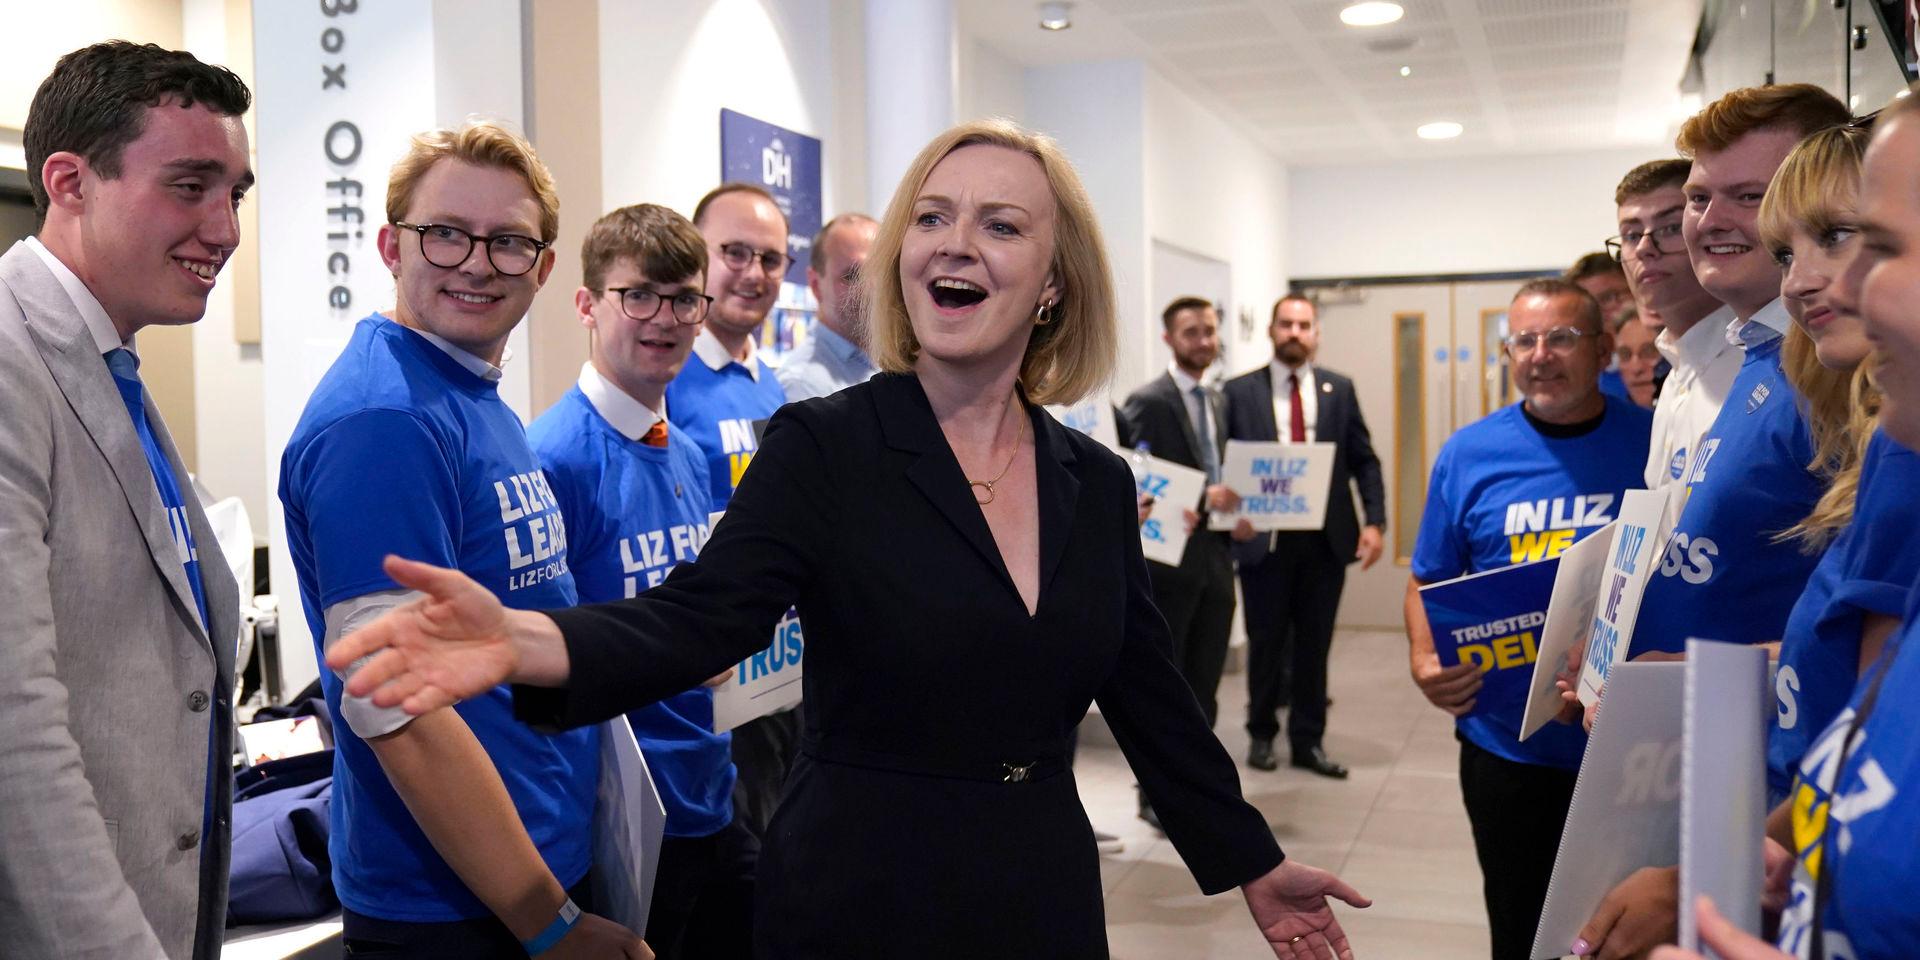 Liz Truss med supportrar. Truss är favorittippad att ta över premiärministerposten efter Boris Johnson.